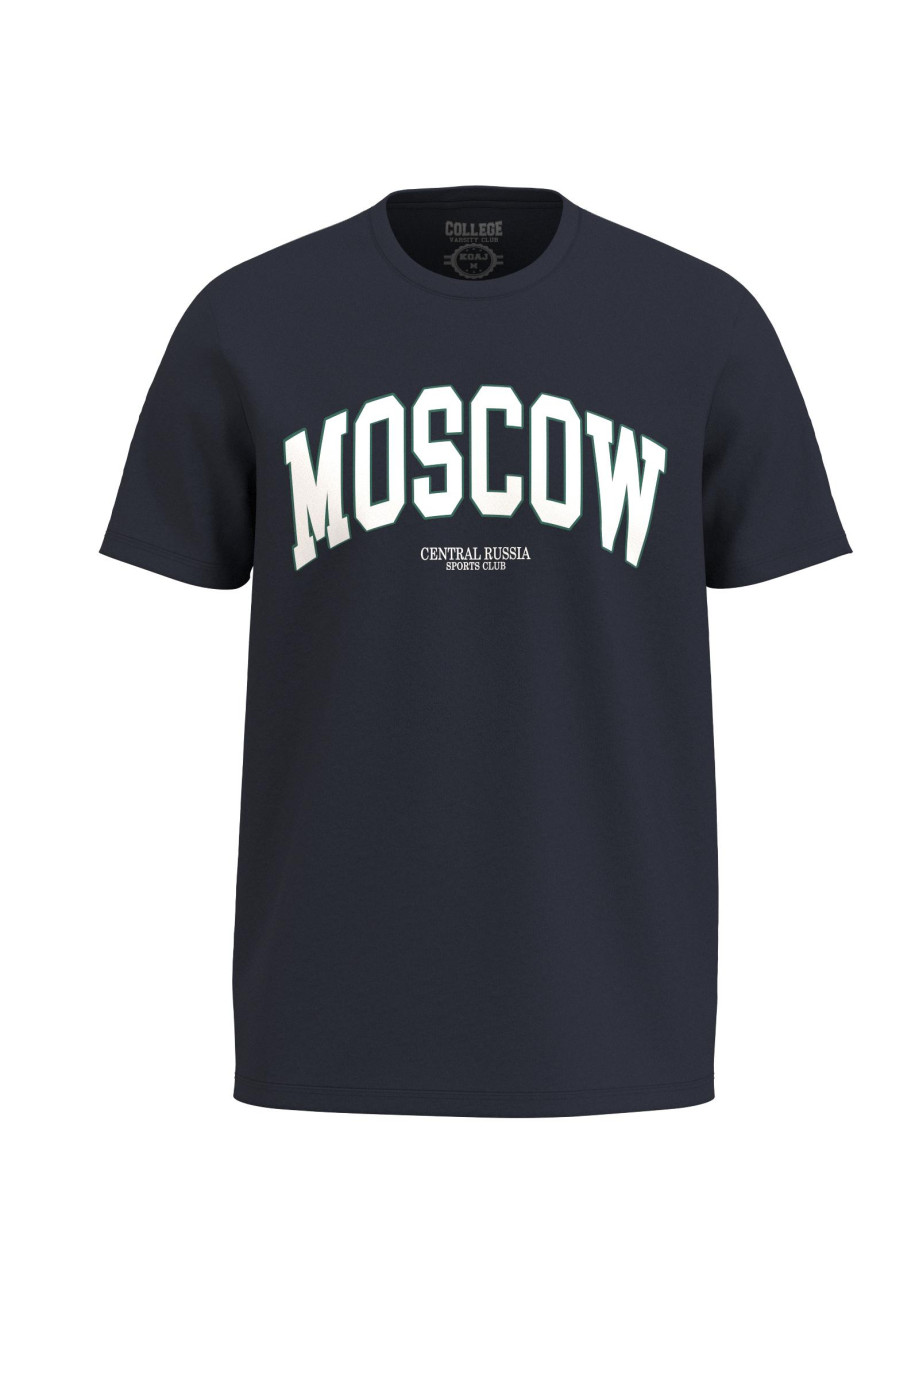 Camiseta unicolor en algodón con manga corta y diseño college de Moscow